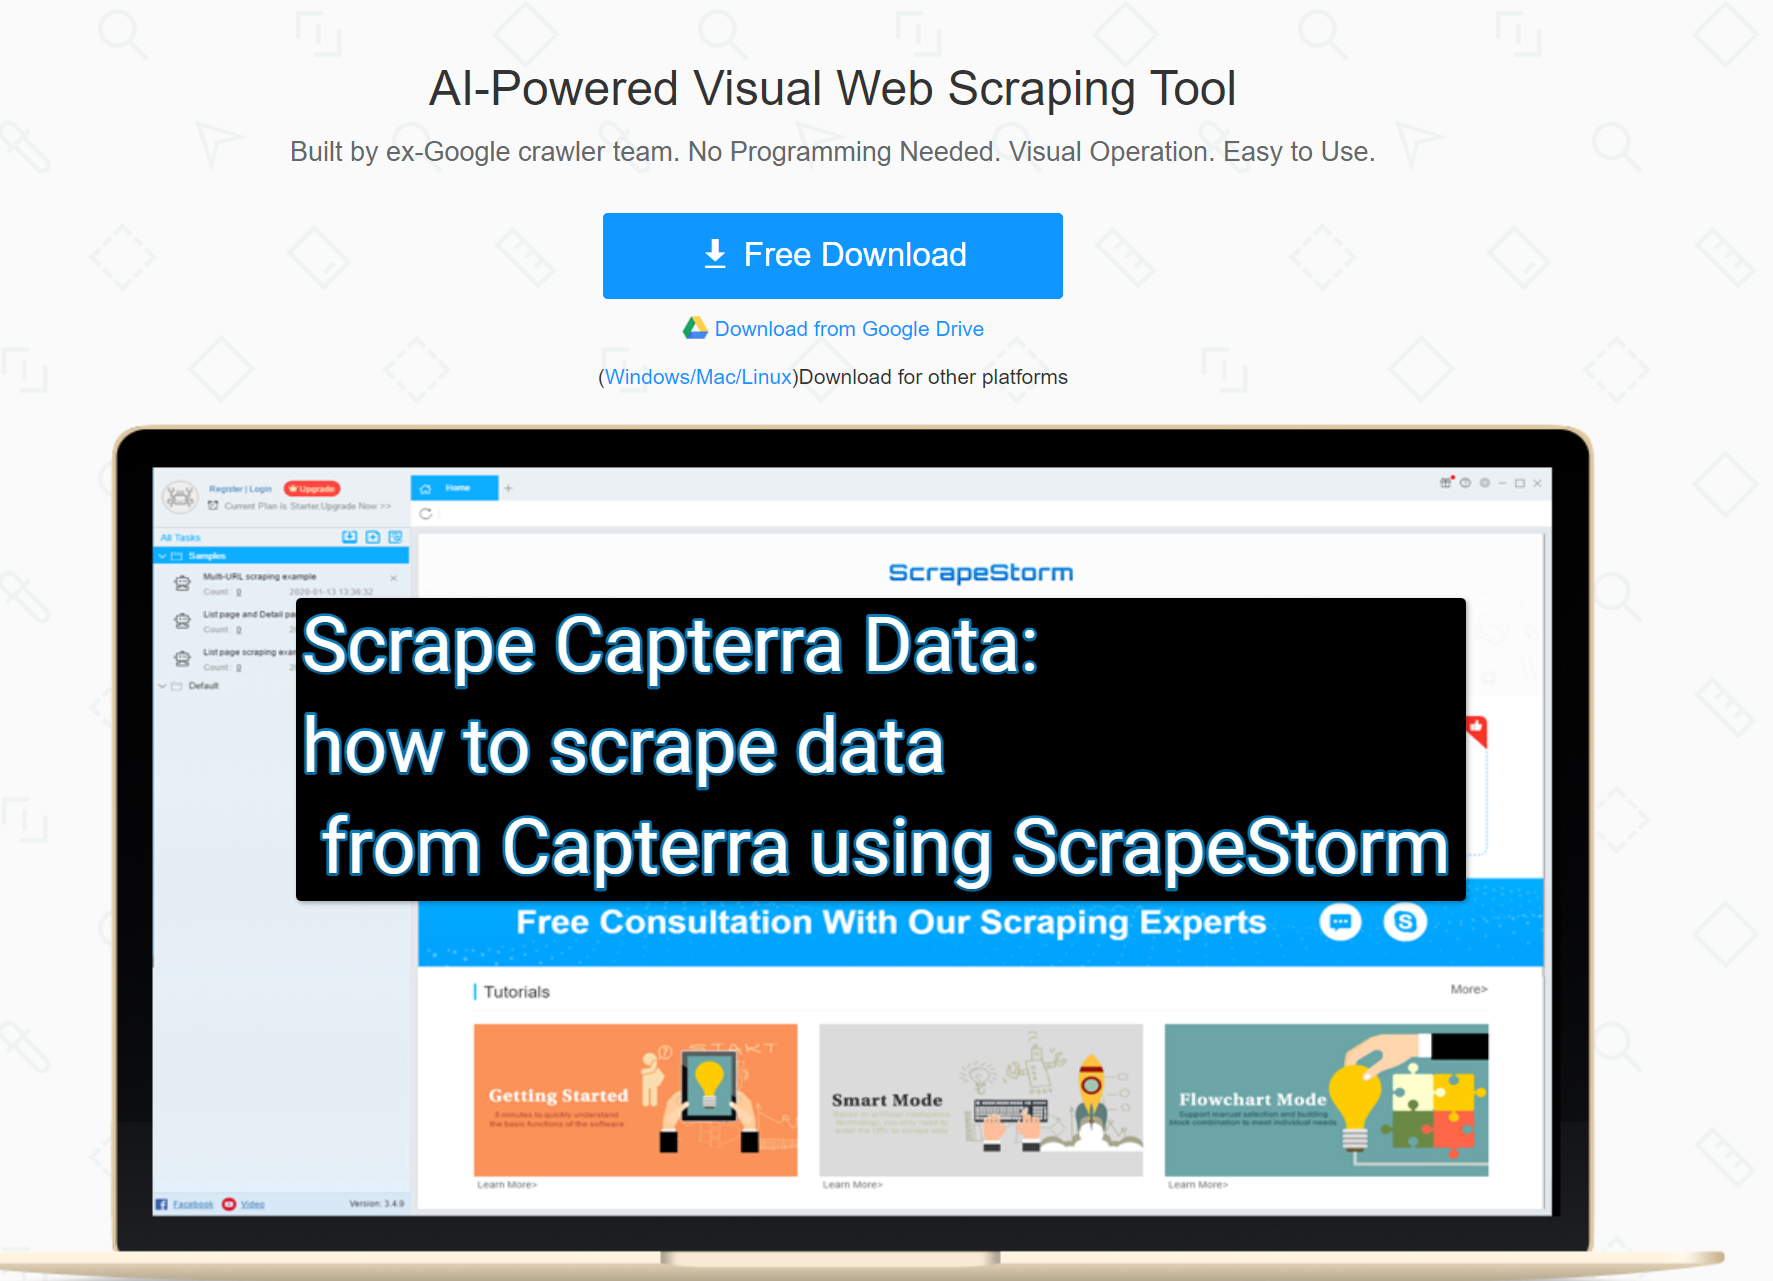 Scrape Capterra Data how to scrape data from Capterra using ScrapeStorm Scrape Capterra Data: how to scrape data from Capterra using ScrapeStorm